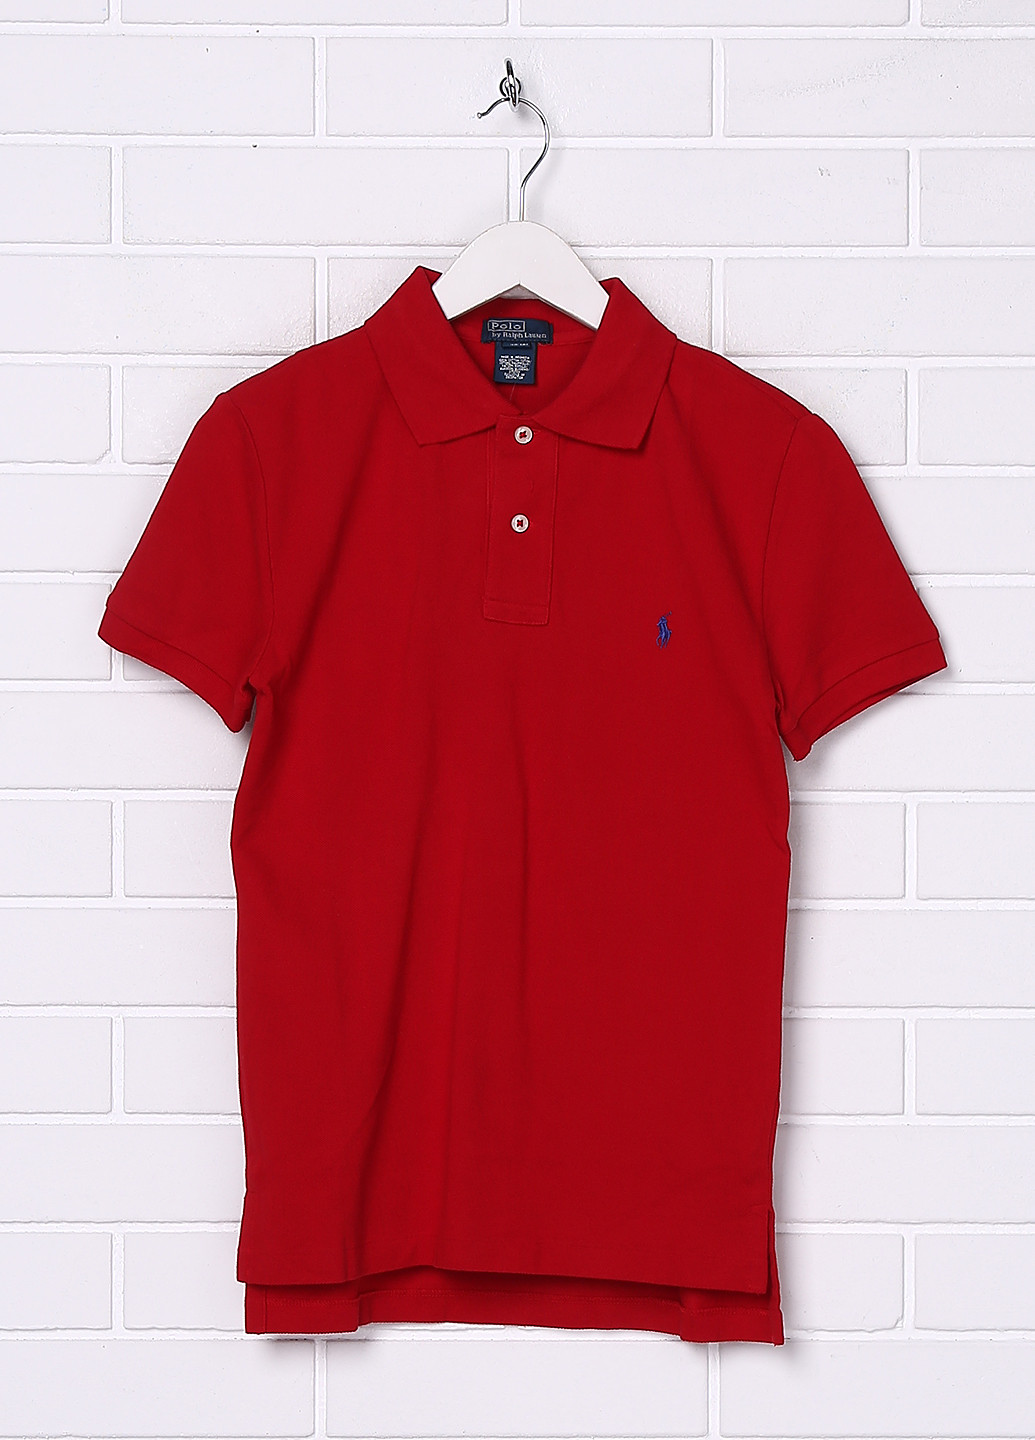 Красная детская футболка-поло для мальчика Ralph Lauren с логотипом